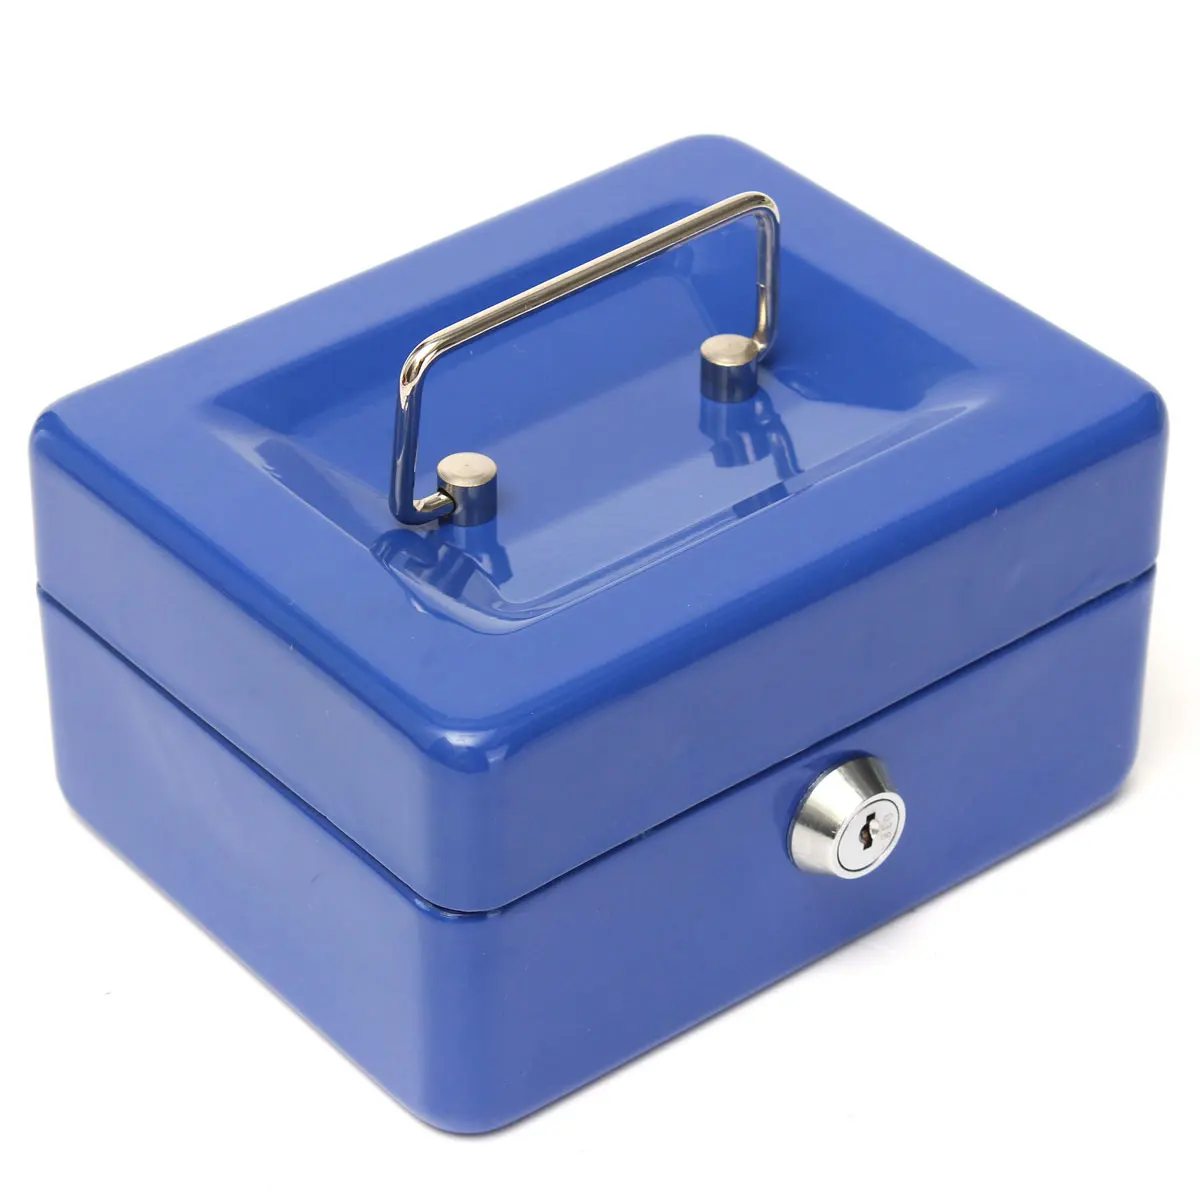 Запираемые наличные монеты хранения денег Сейф безопасности коробка держатель чемодан с замком ключ 6 отсек лоток - Цвет: Blue